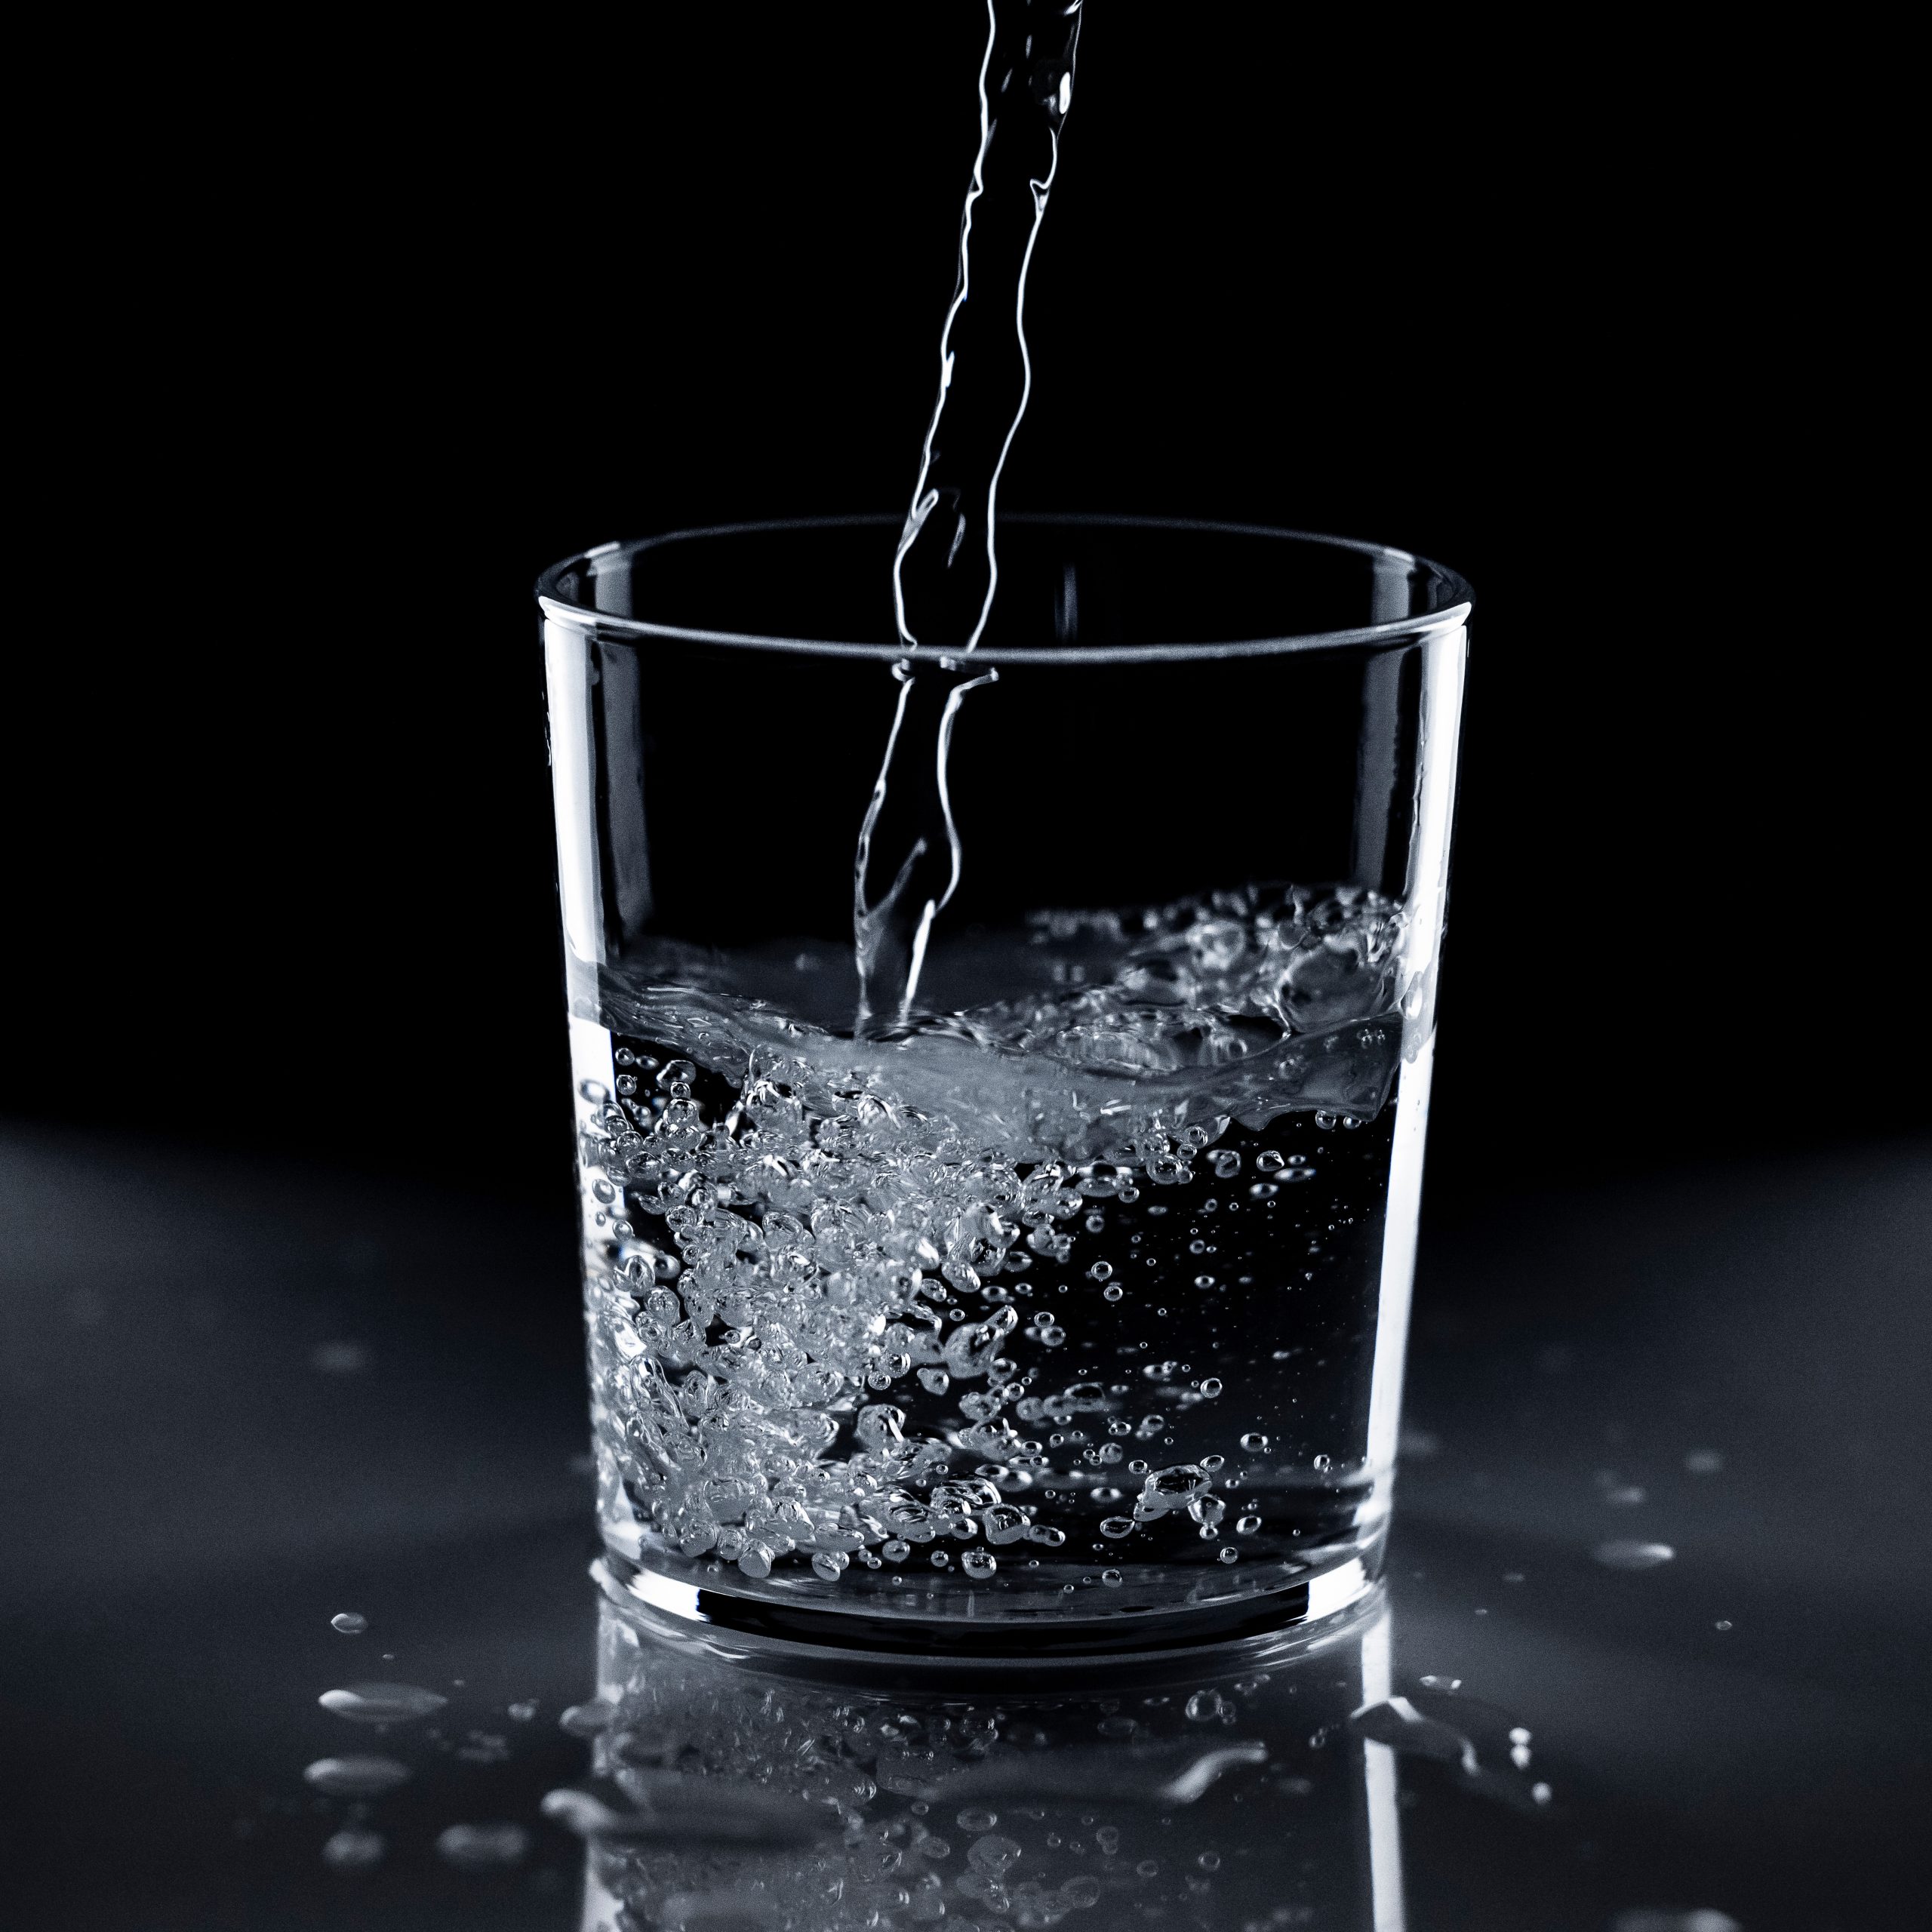 La actualización de la norma sobre agua potable – Perspectivas – (IMTA)